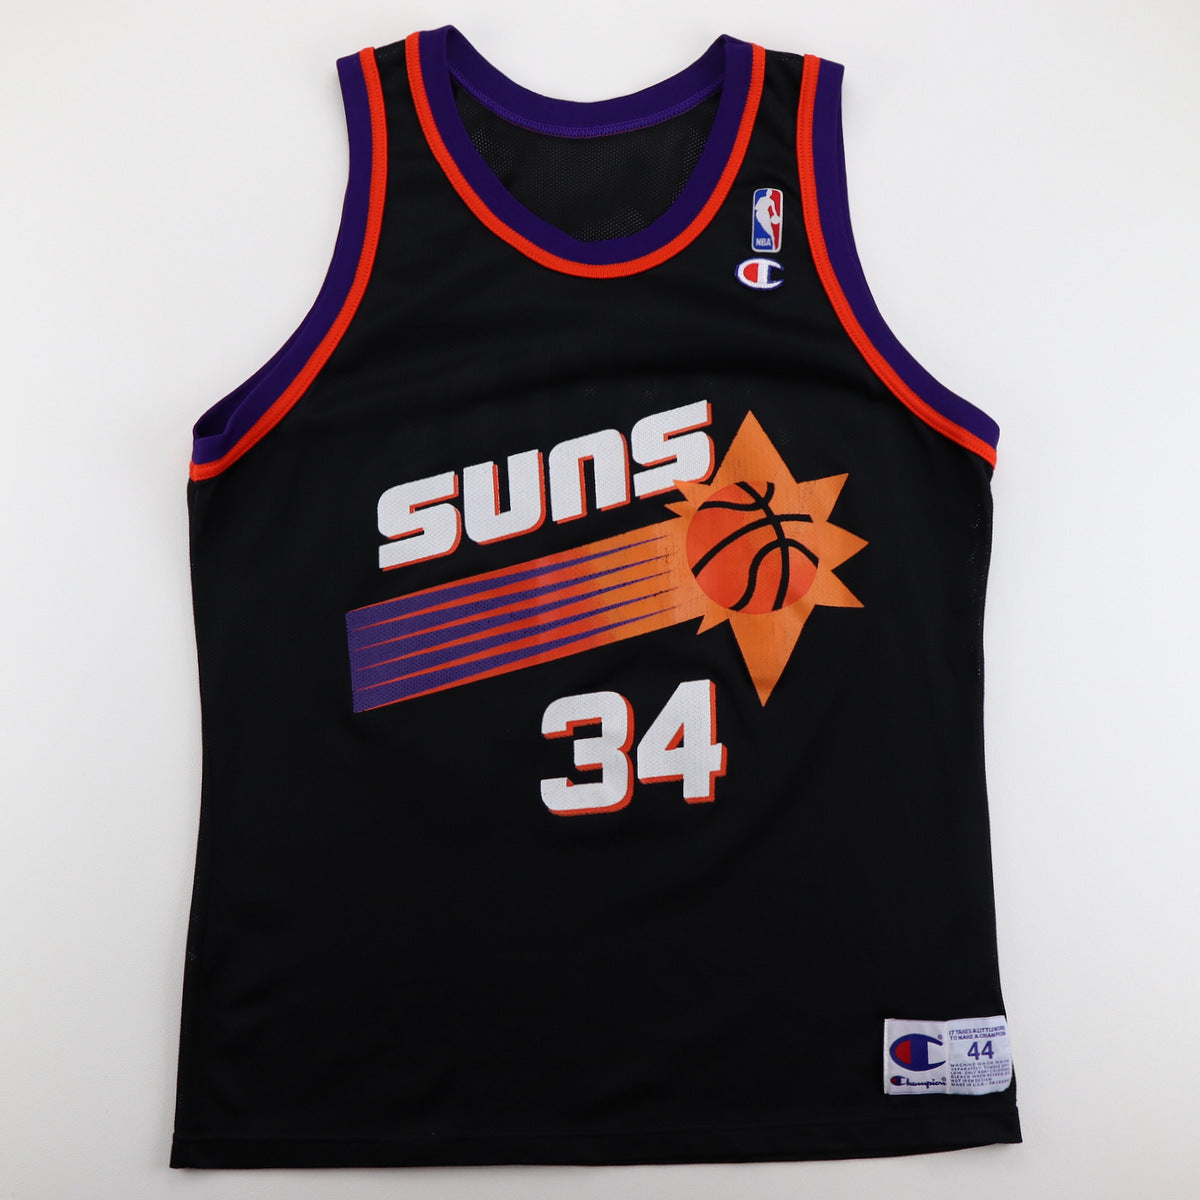 Phoenix Suns NBA Jerseys, Phoenix Suns Basketball Jerseys